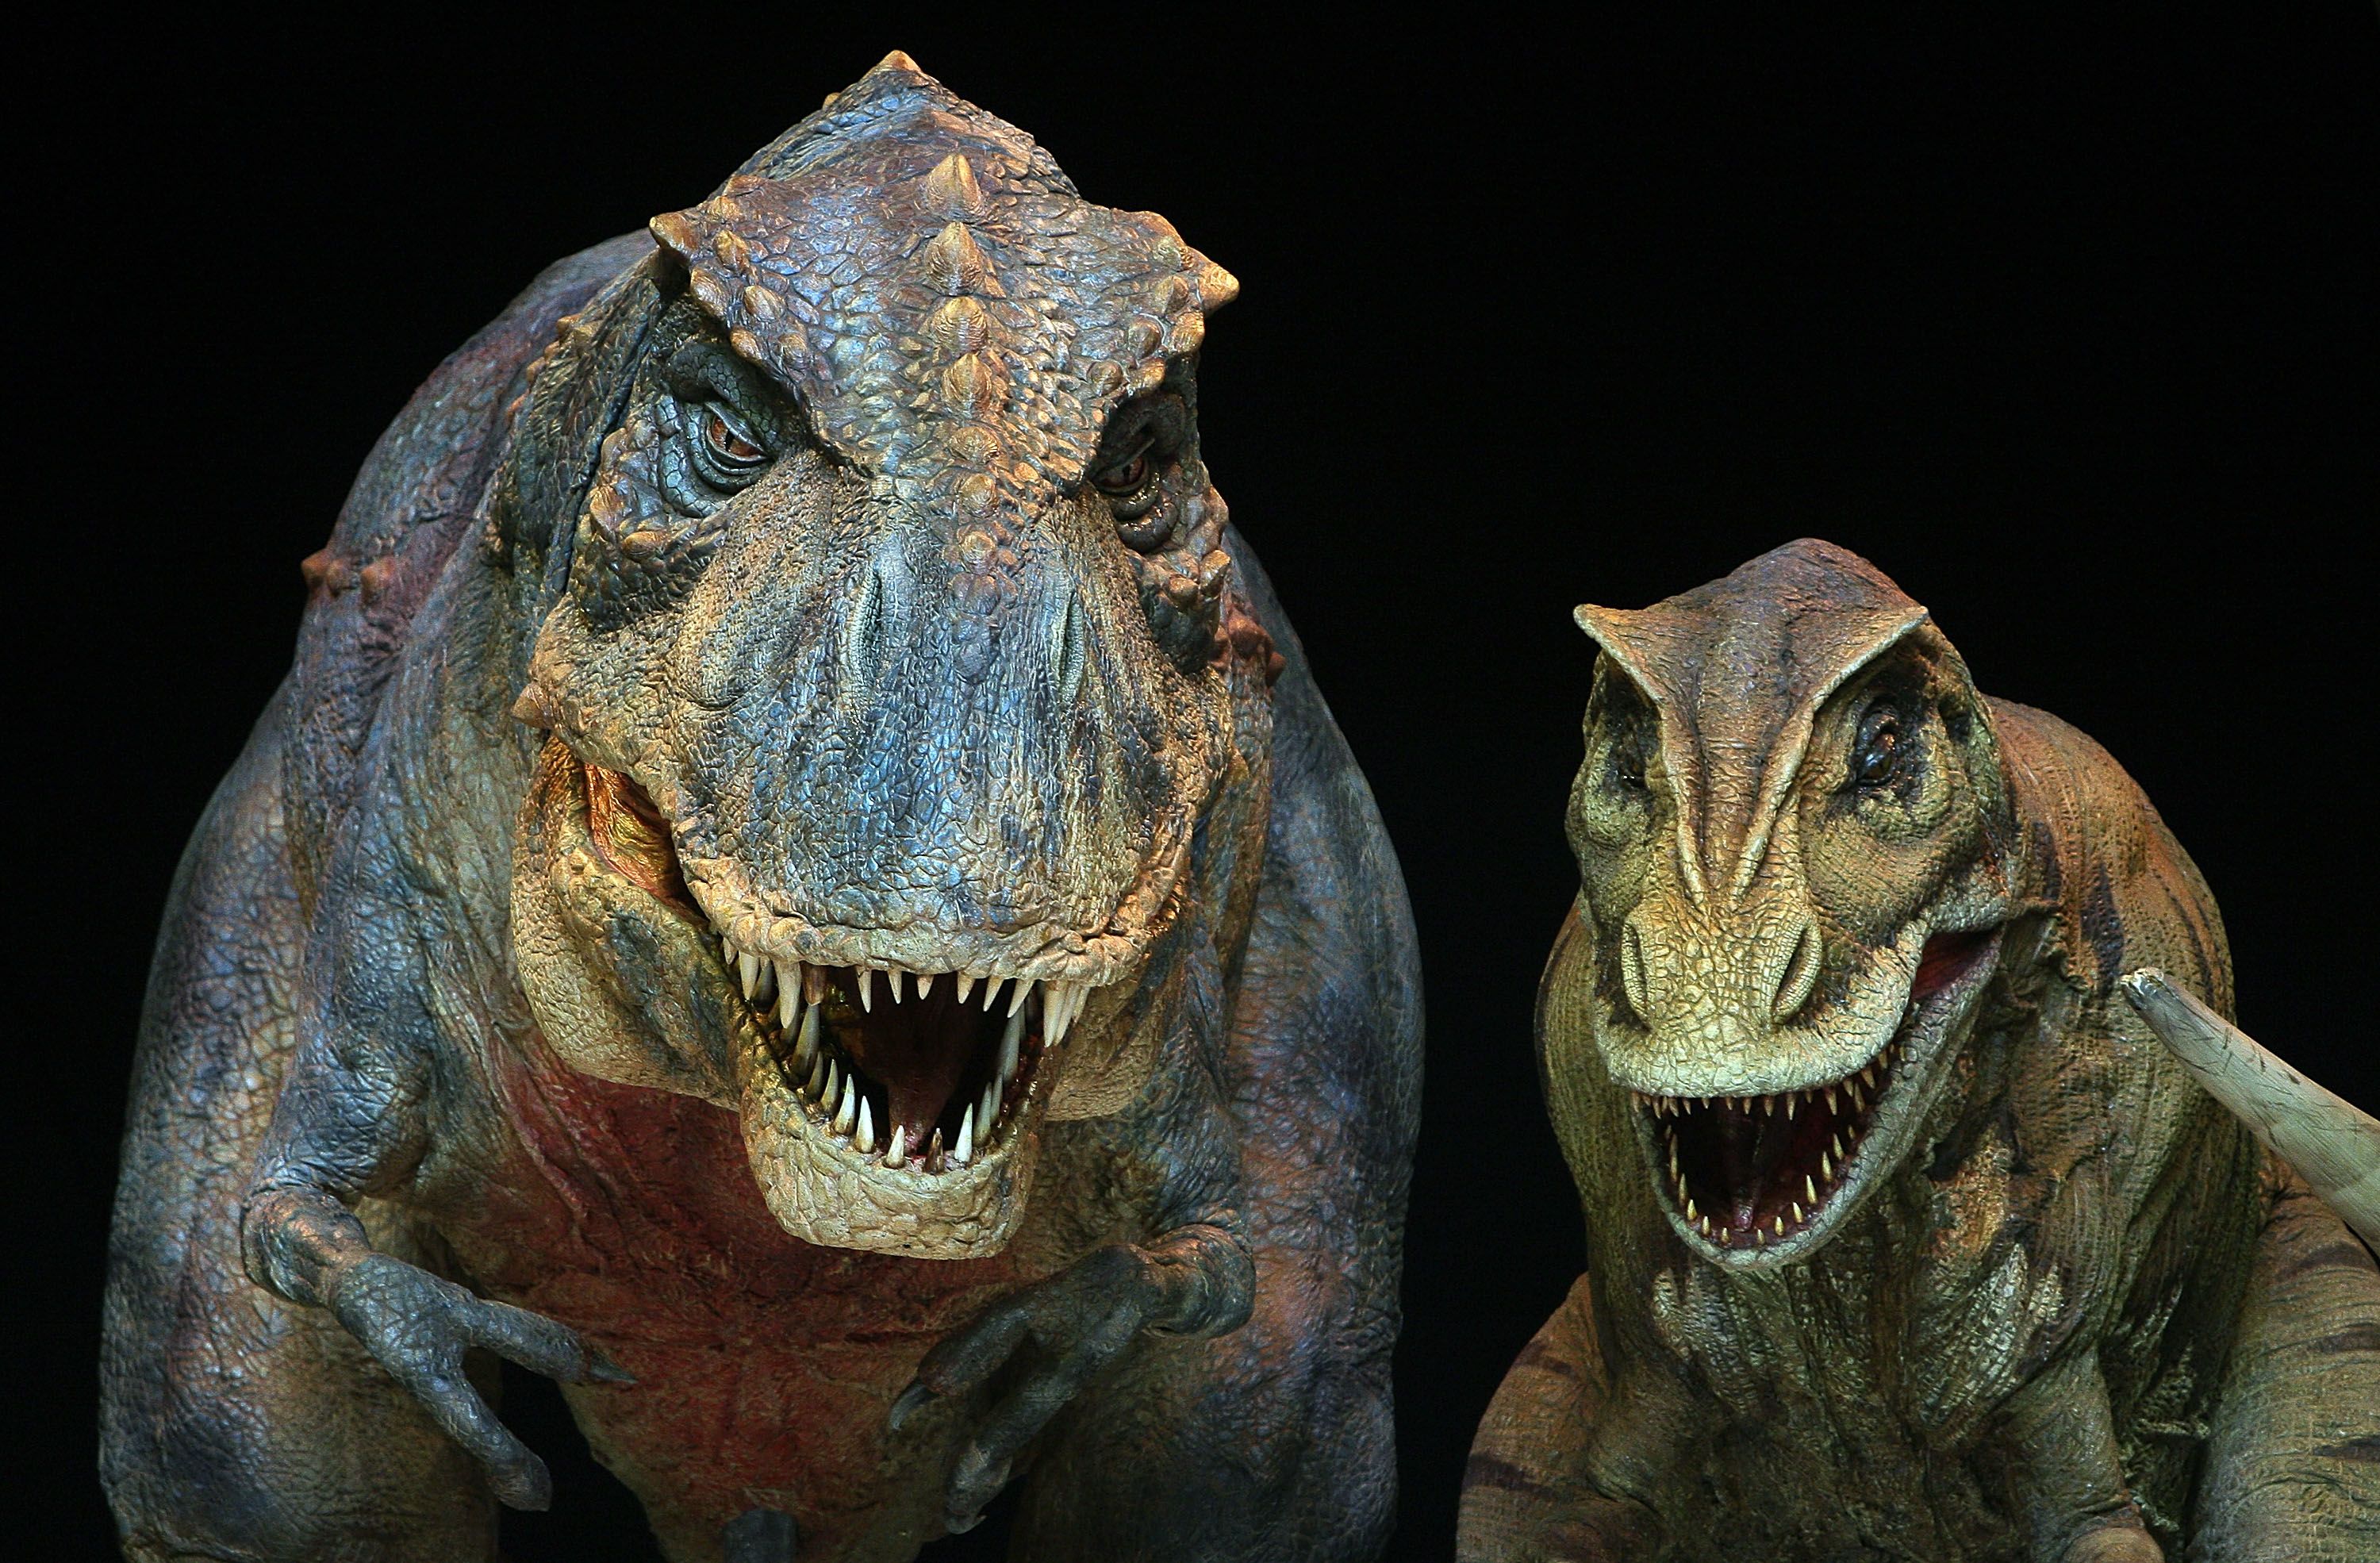 first dinosaur fossil found